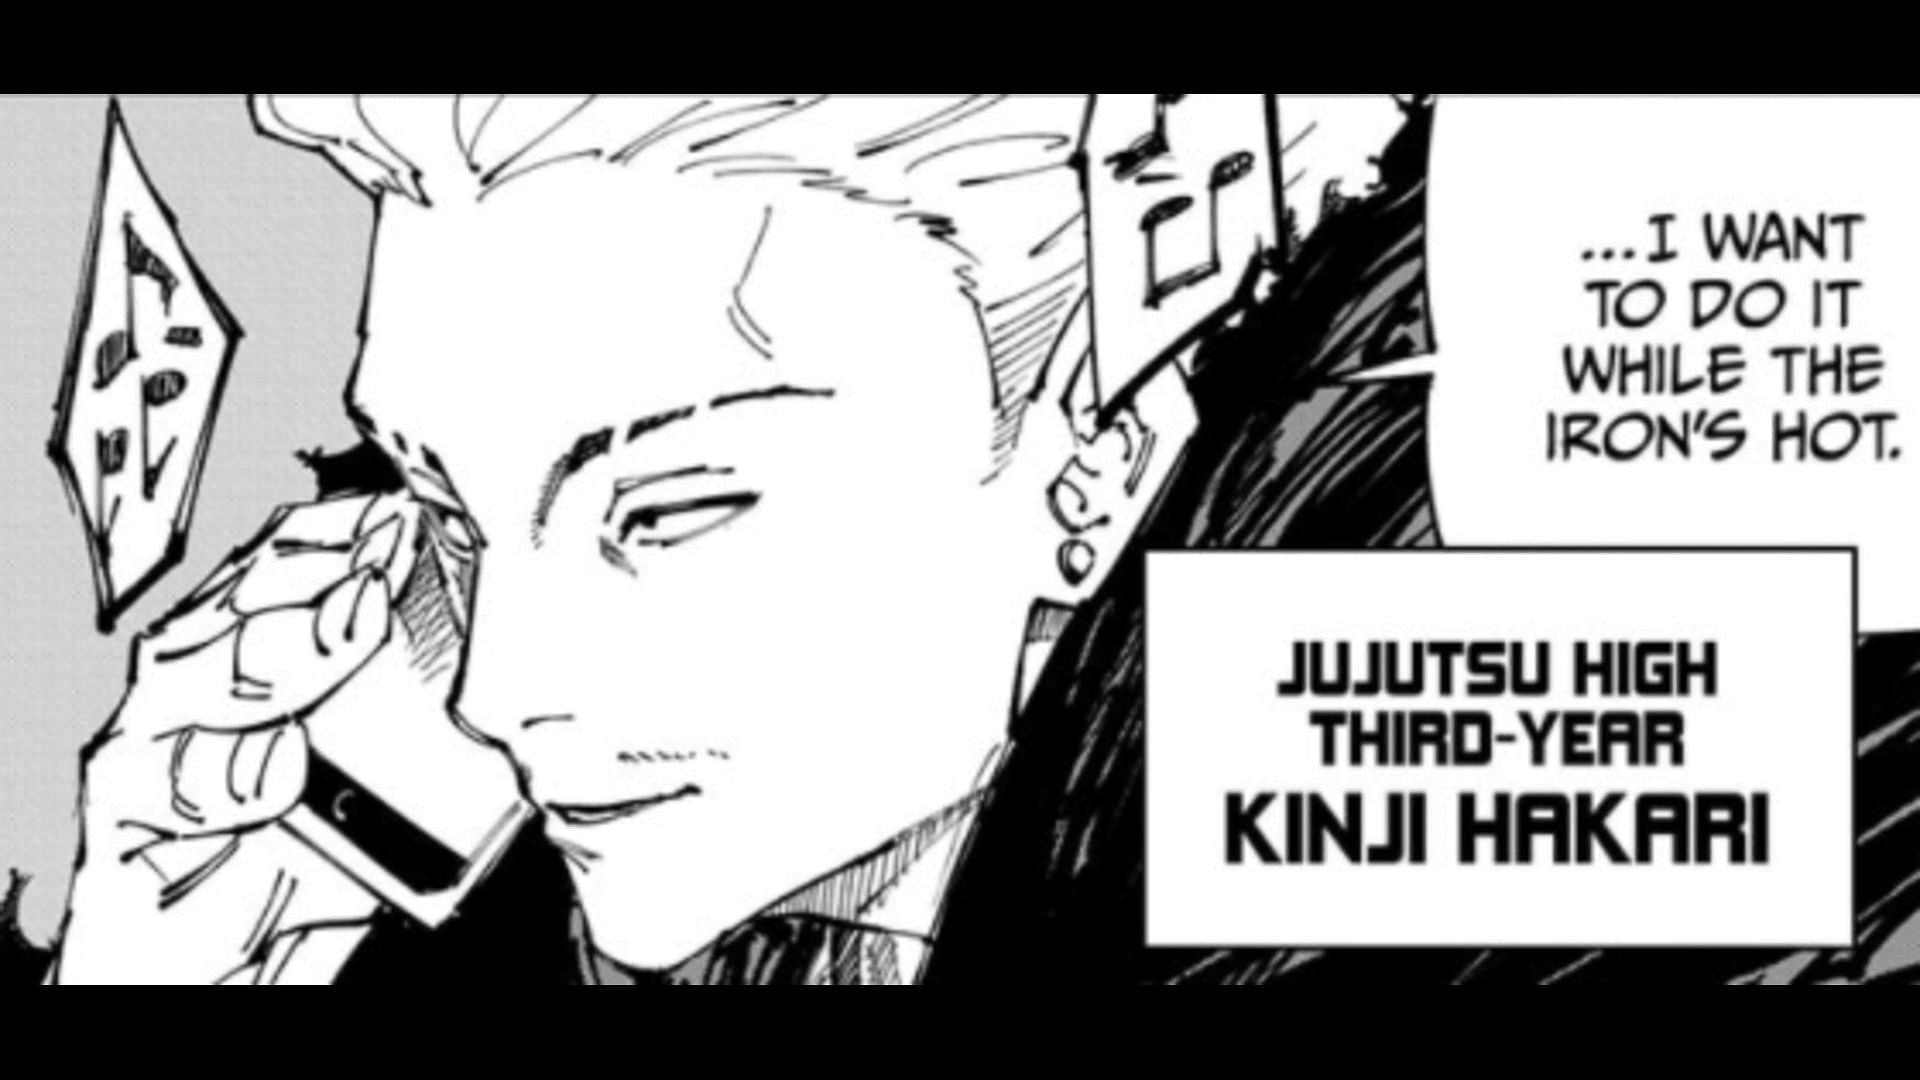 Kinji Hakari as seen in the Jujutsu Kaisen manga (Image via Gege Akutami, Sheuisha)